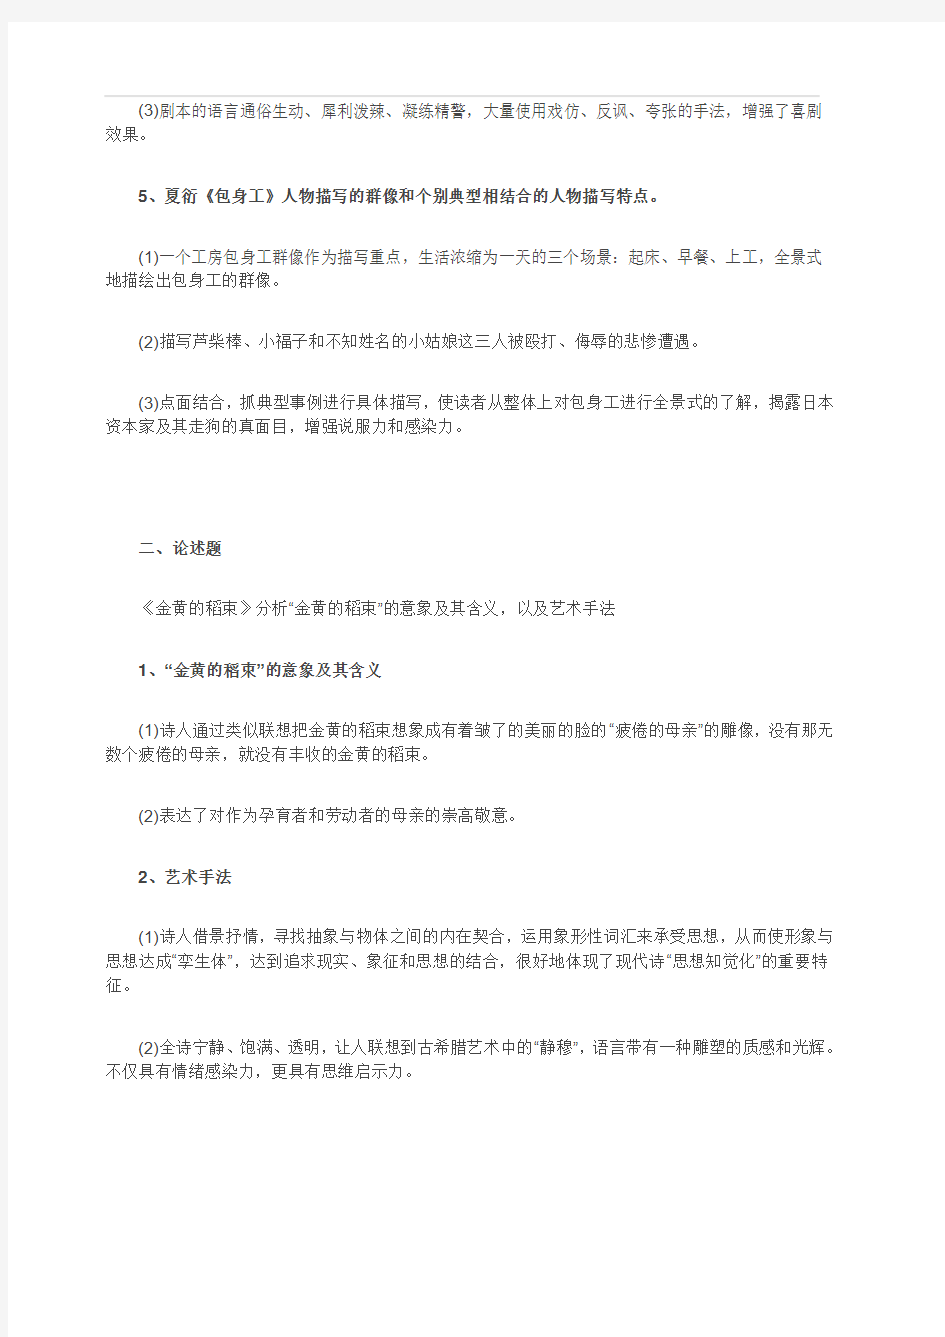 2018年10月自考《中国现代文学作品选》考试真题及答案解析